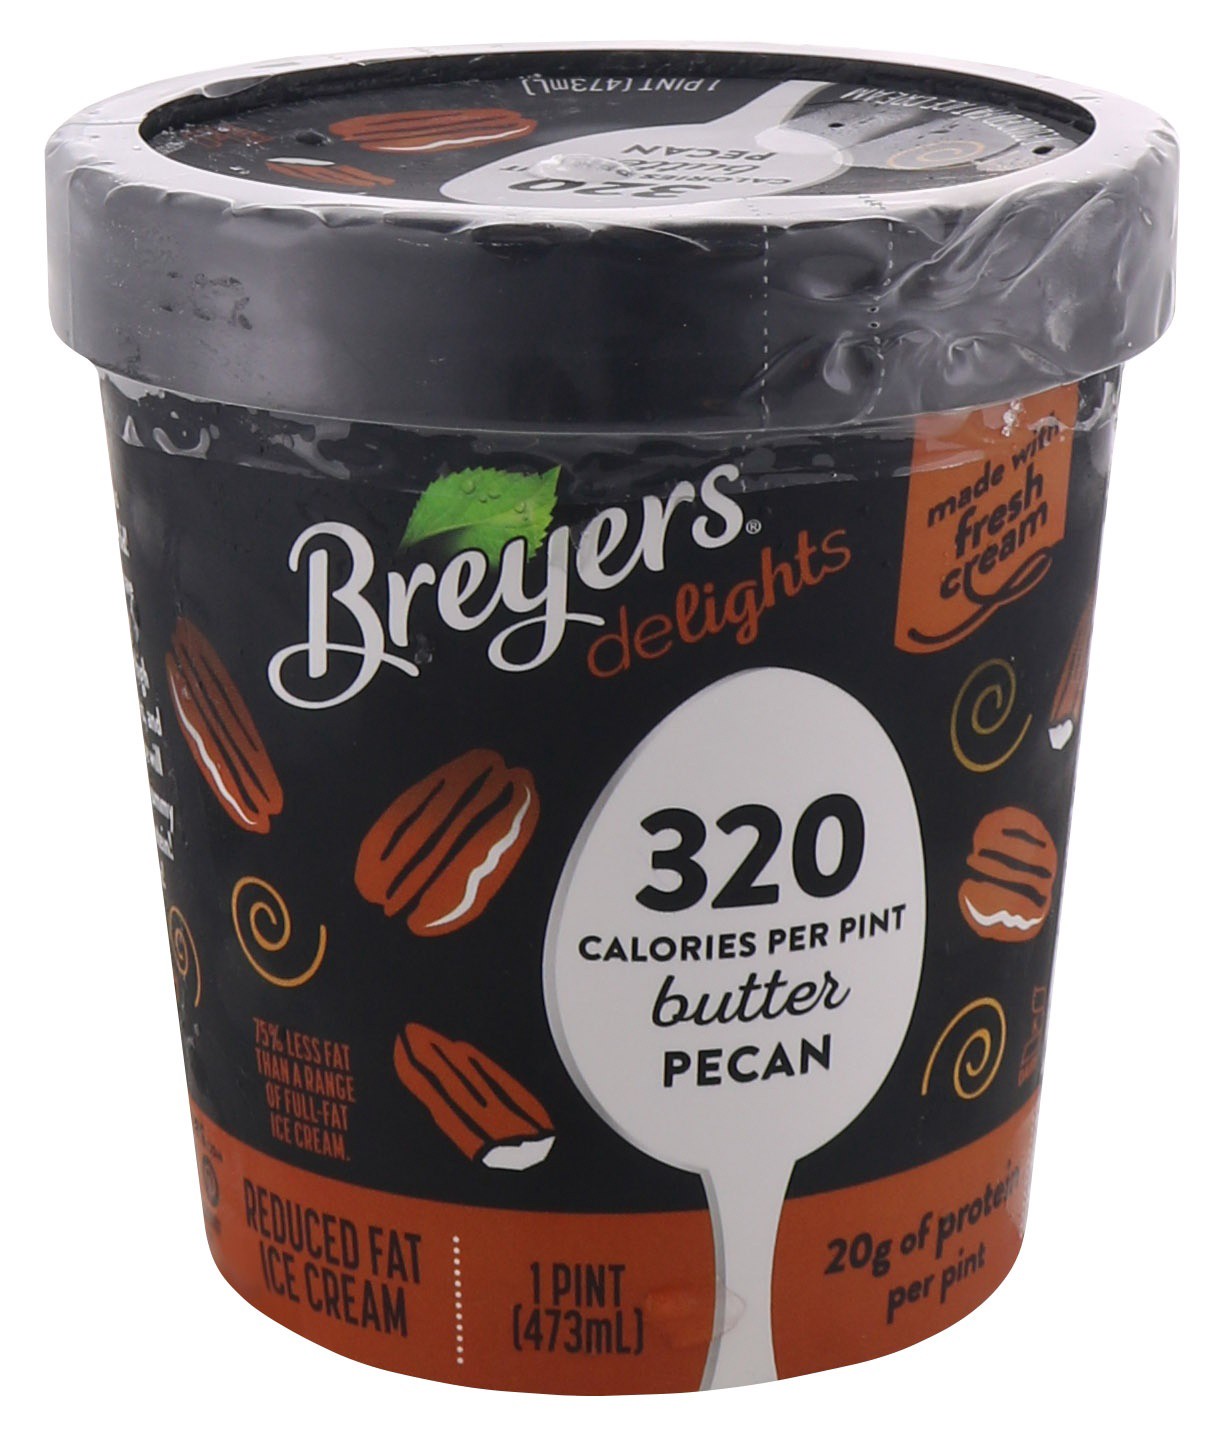 slide 1 of 6, Breyers Delights Butter Pecan Ice Cream, 1 pint